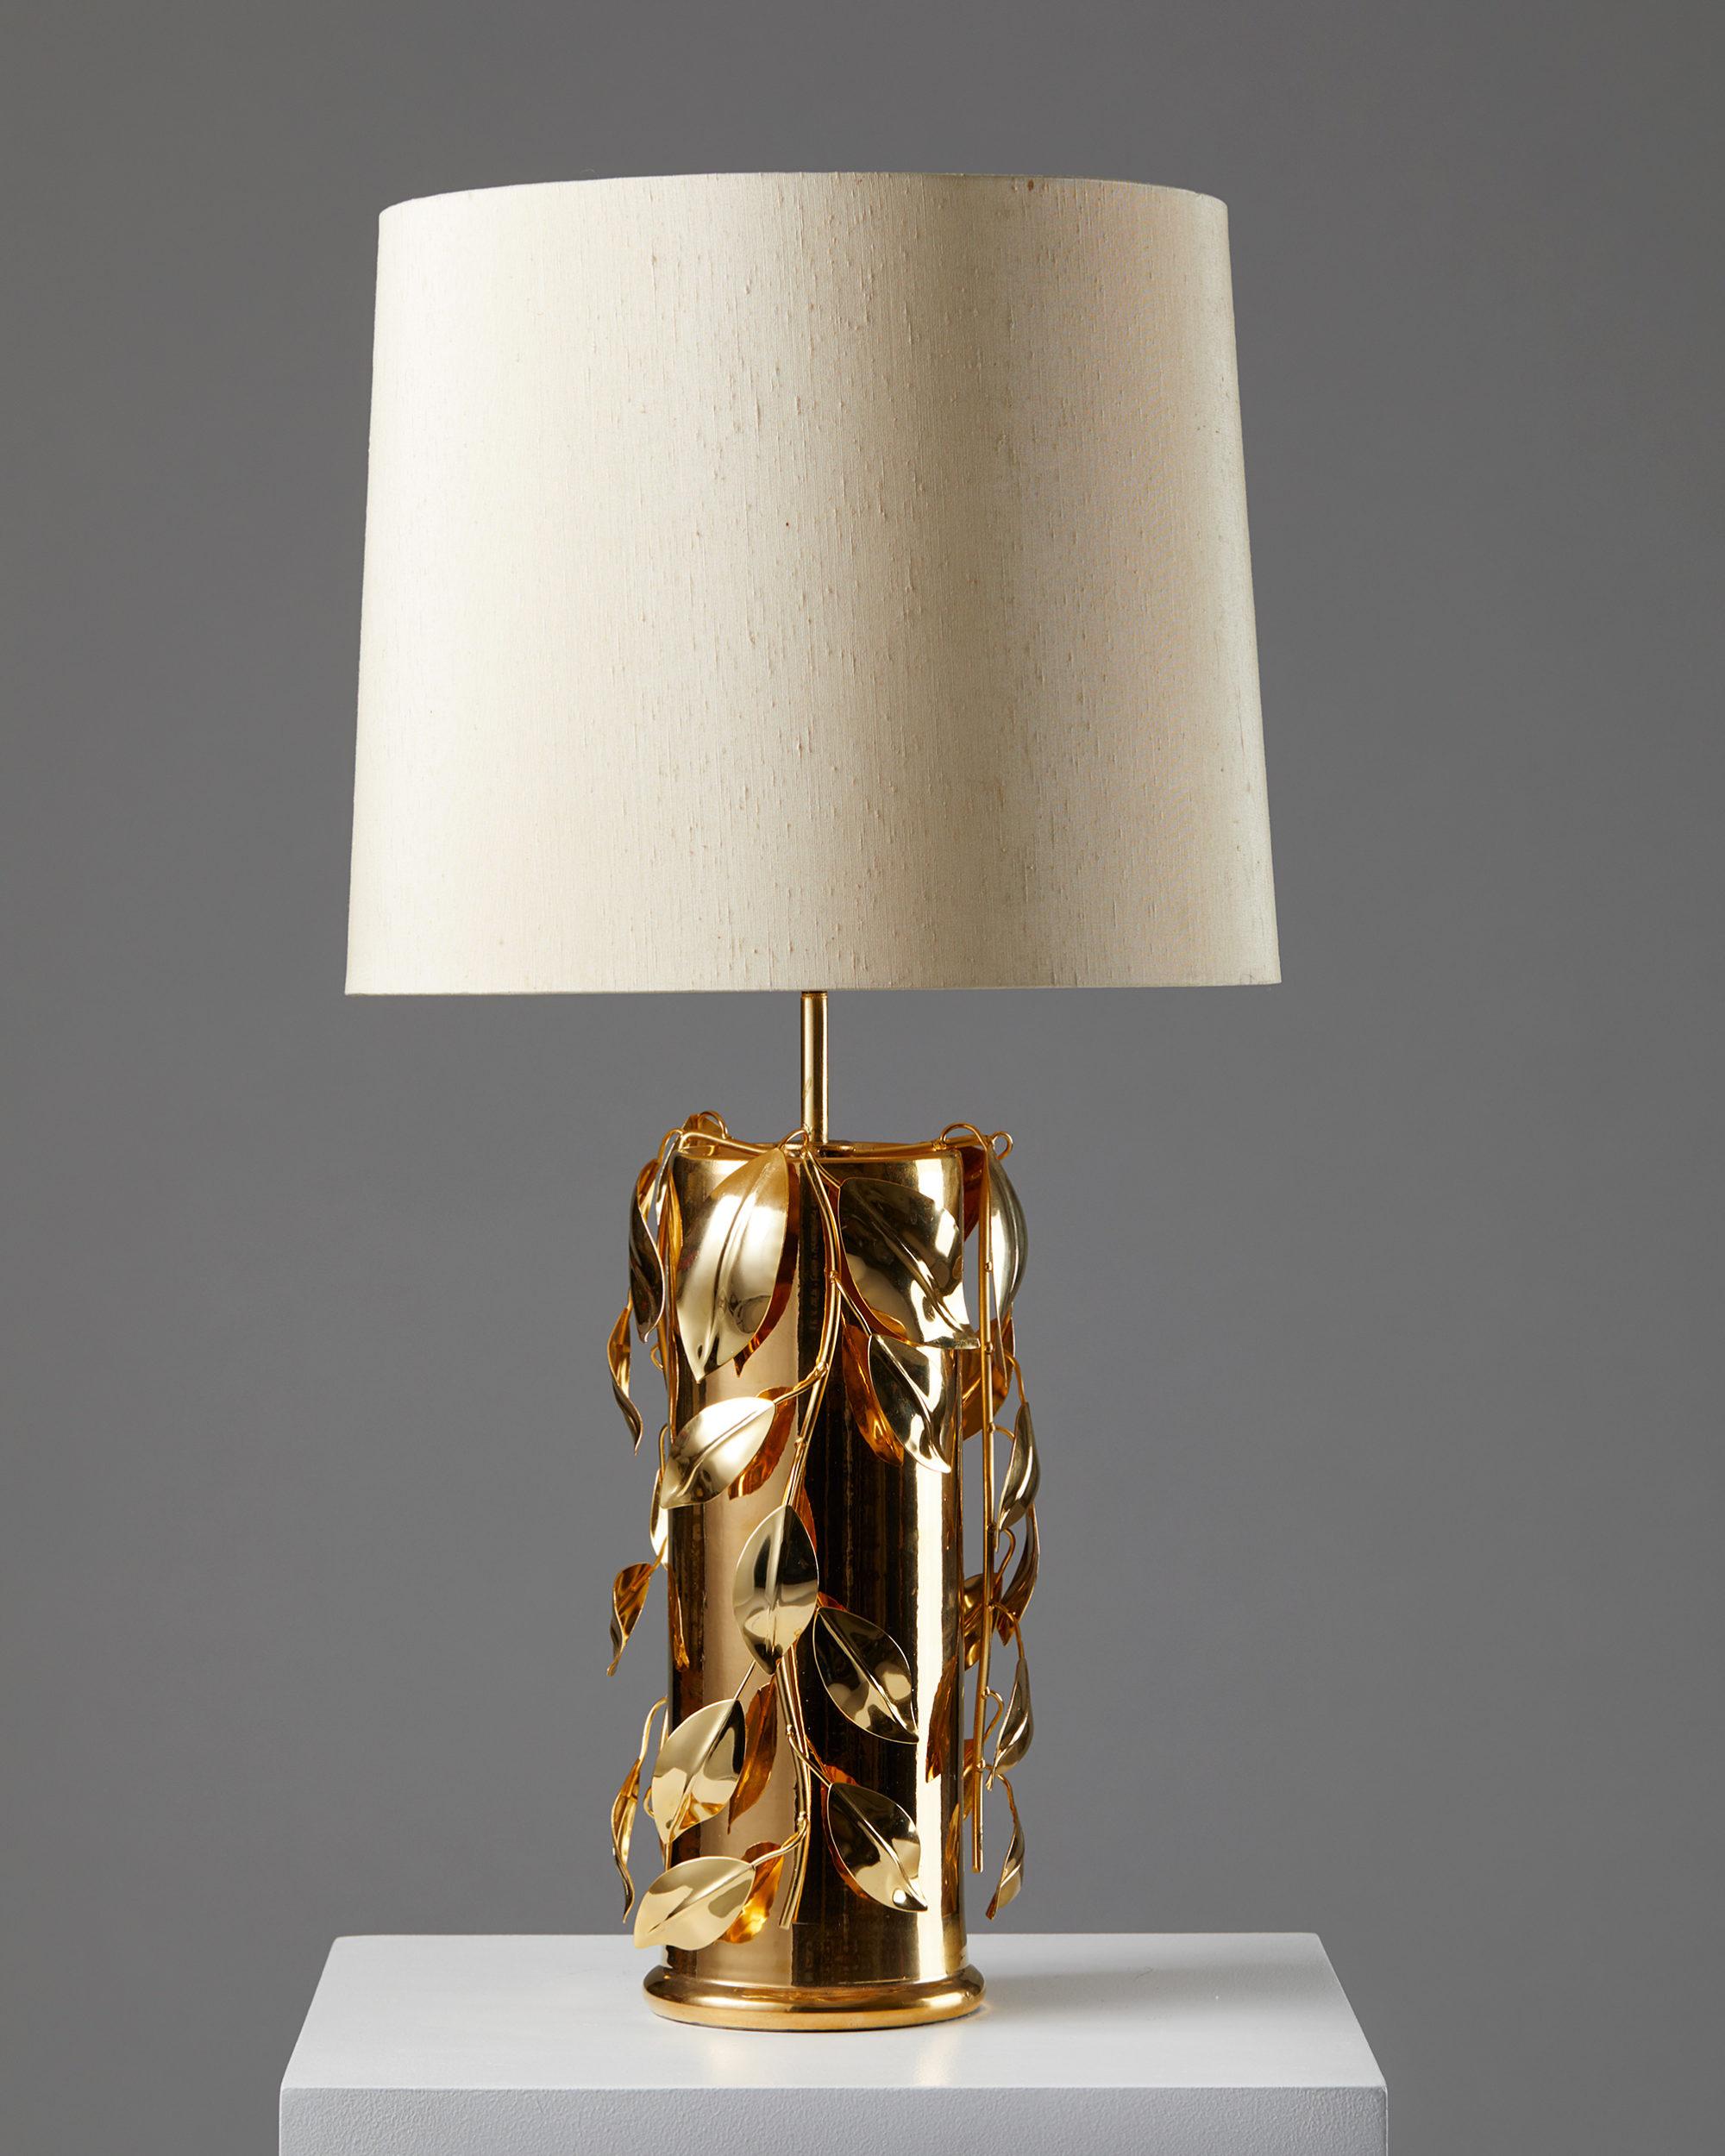 Lampe de table conçue par Bertil Brisborg pour Nordsika Kompaniet,
Suède. 1960s.

Céramique et laiton avec abat-jour en tissu.

Estampillé.

Mesures : 
H : 44 cm/ 17 10/32